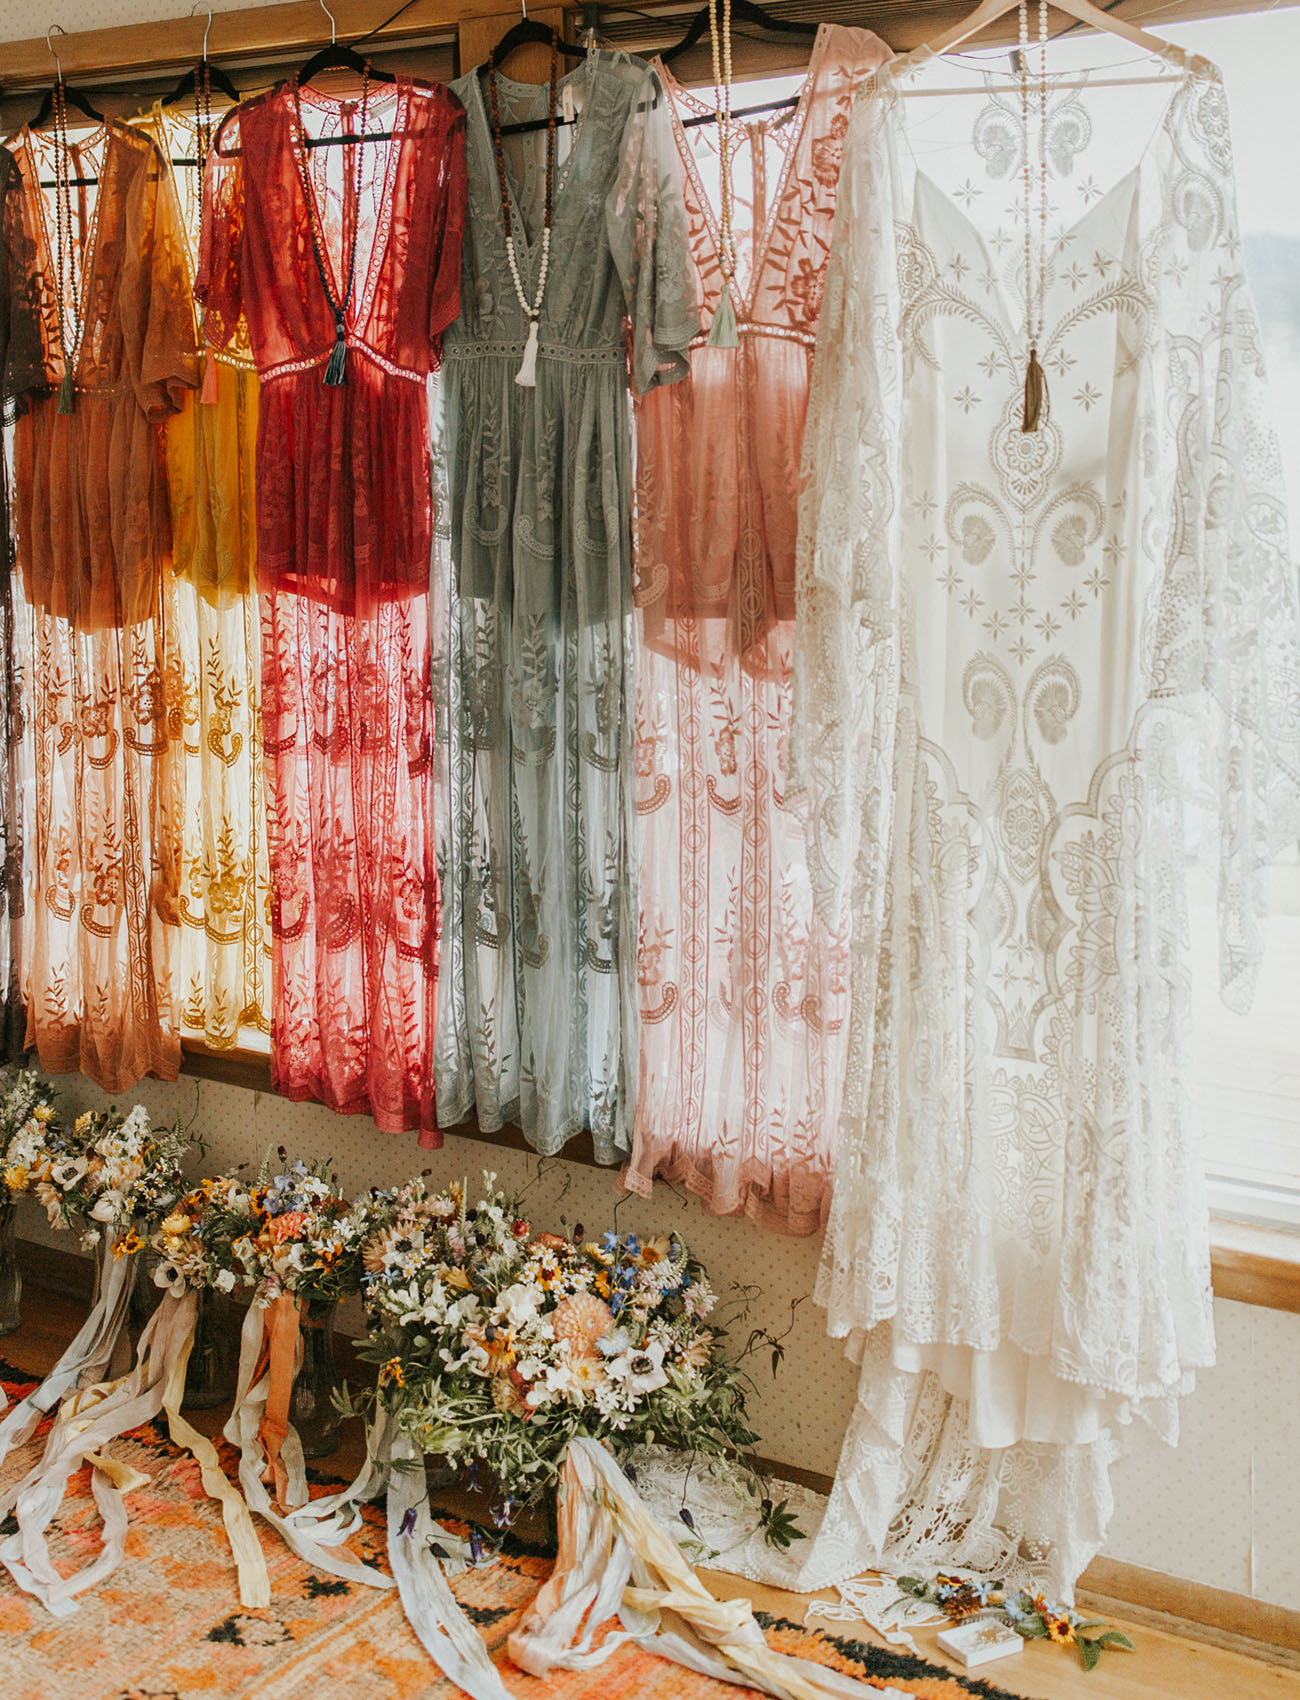 rainbow bridesmaid dresses